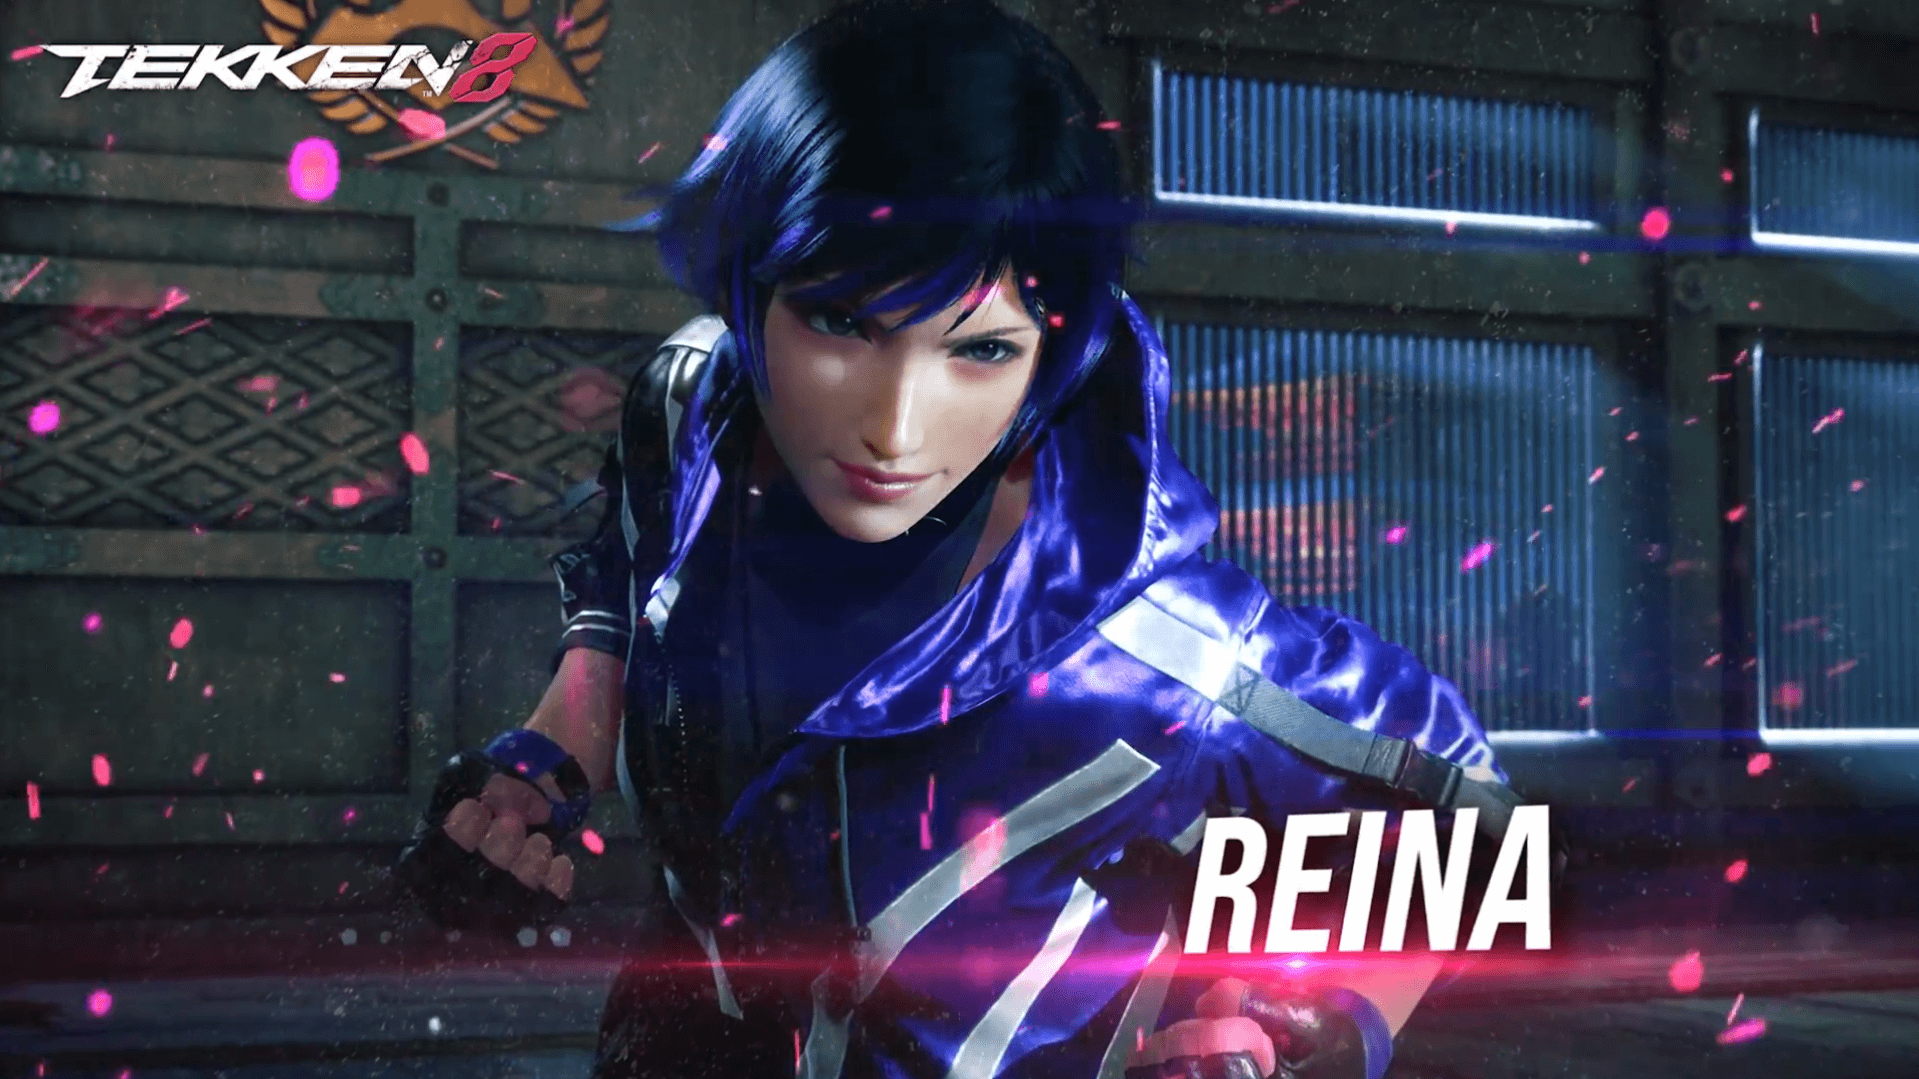 Reina Mishima Revealed for Tekken 8